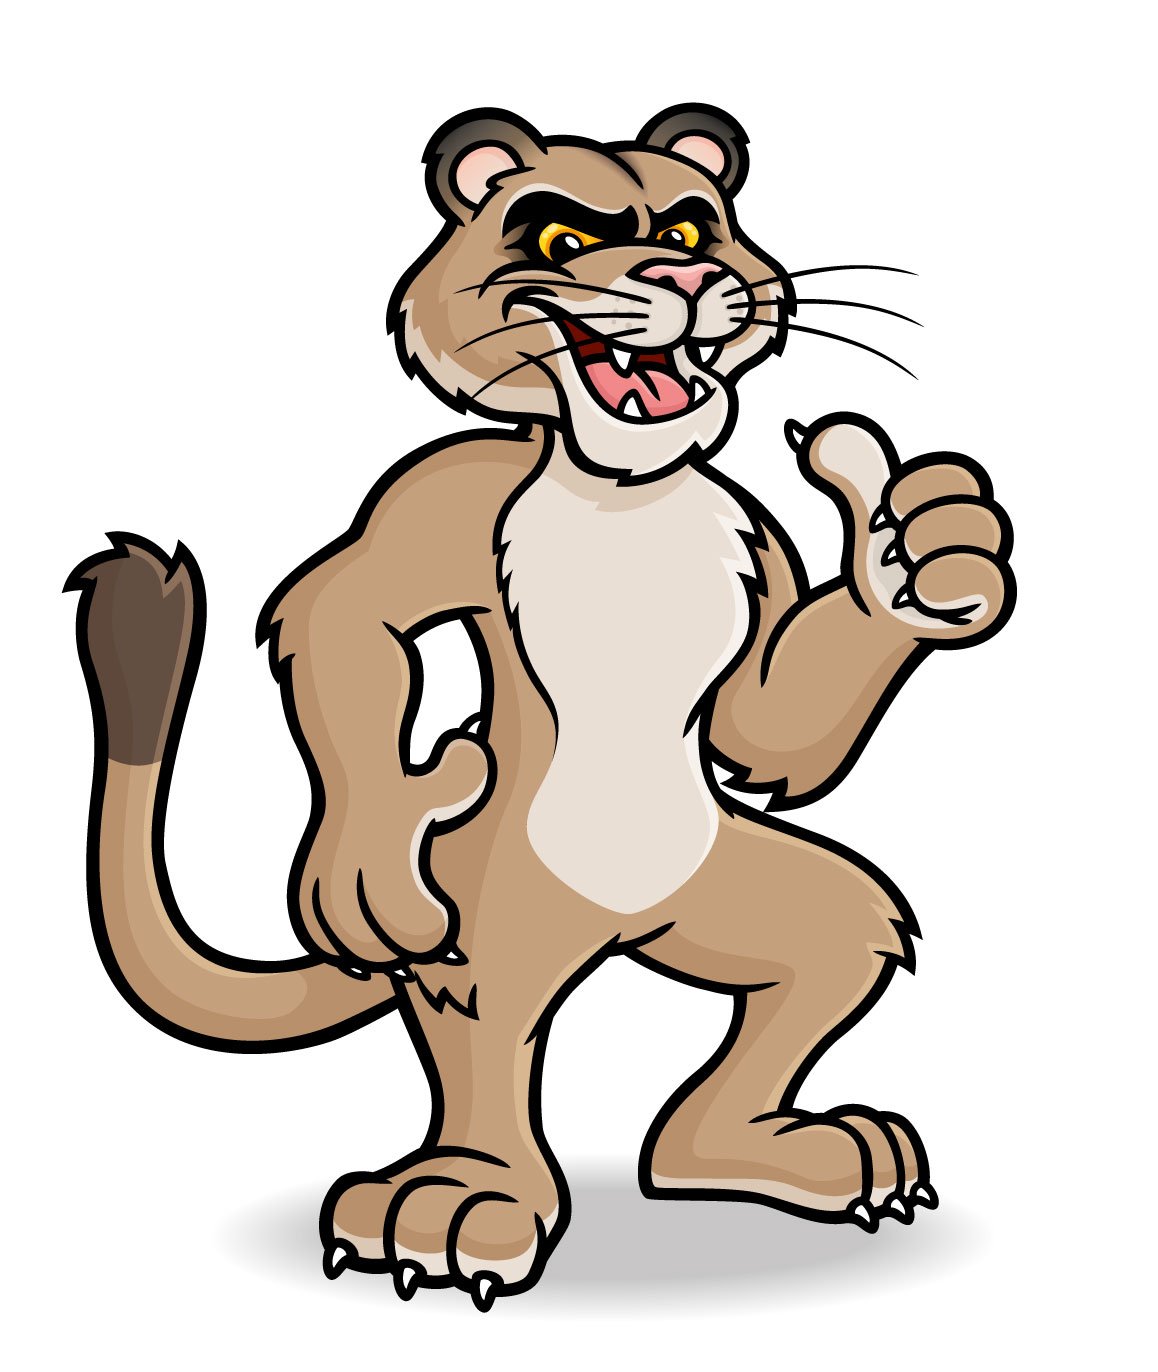 Cougar-Mascot-Character-Vector03.jpg